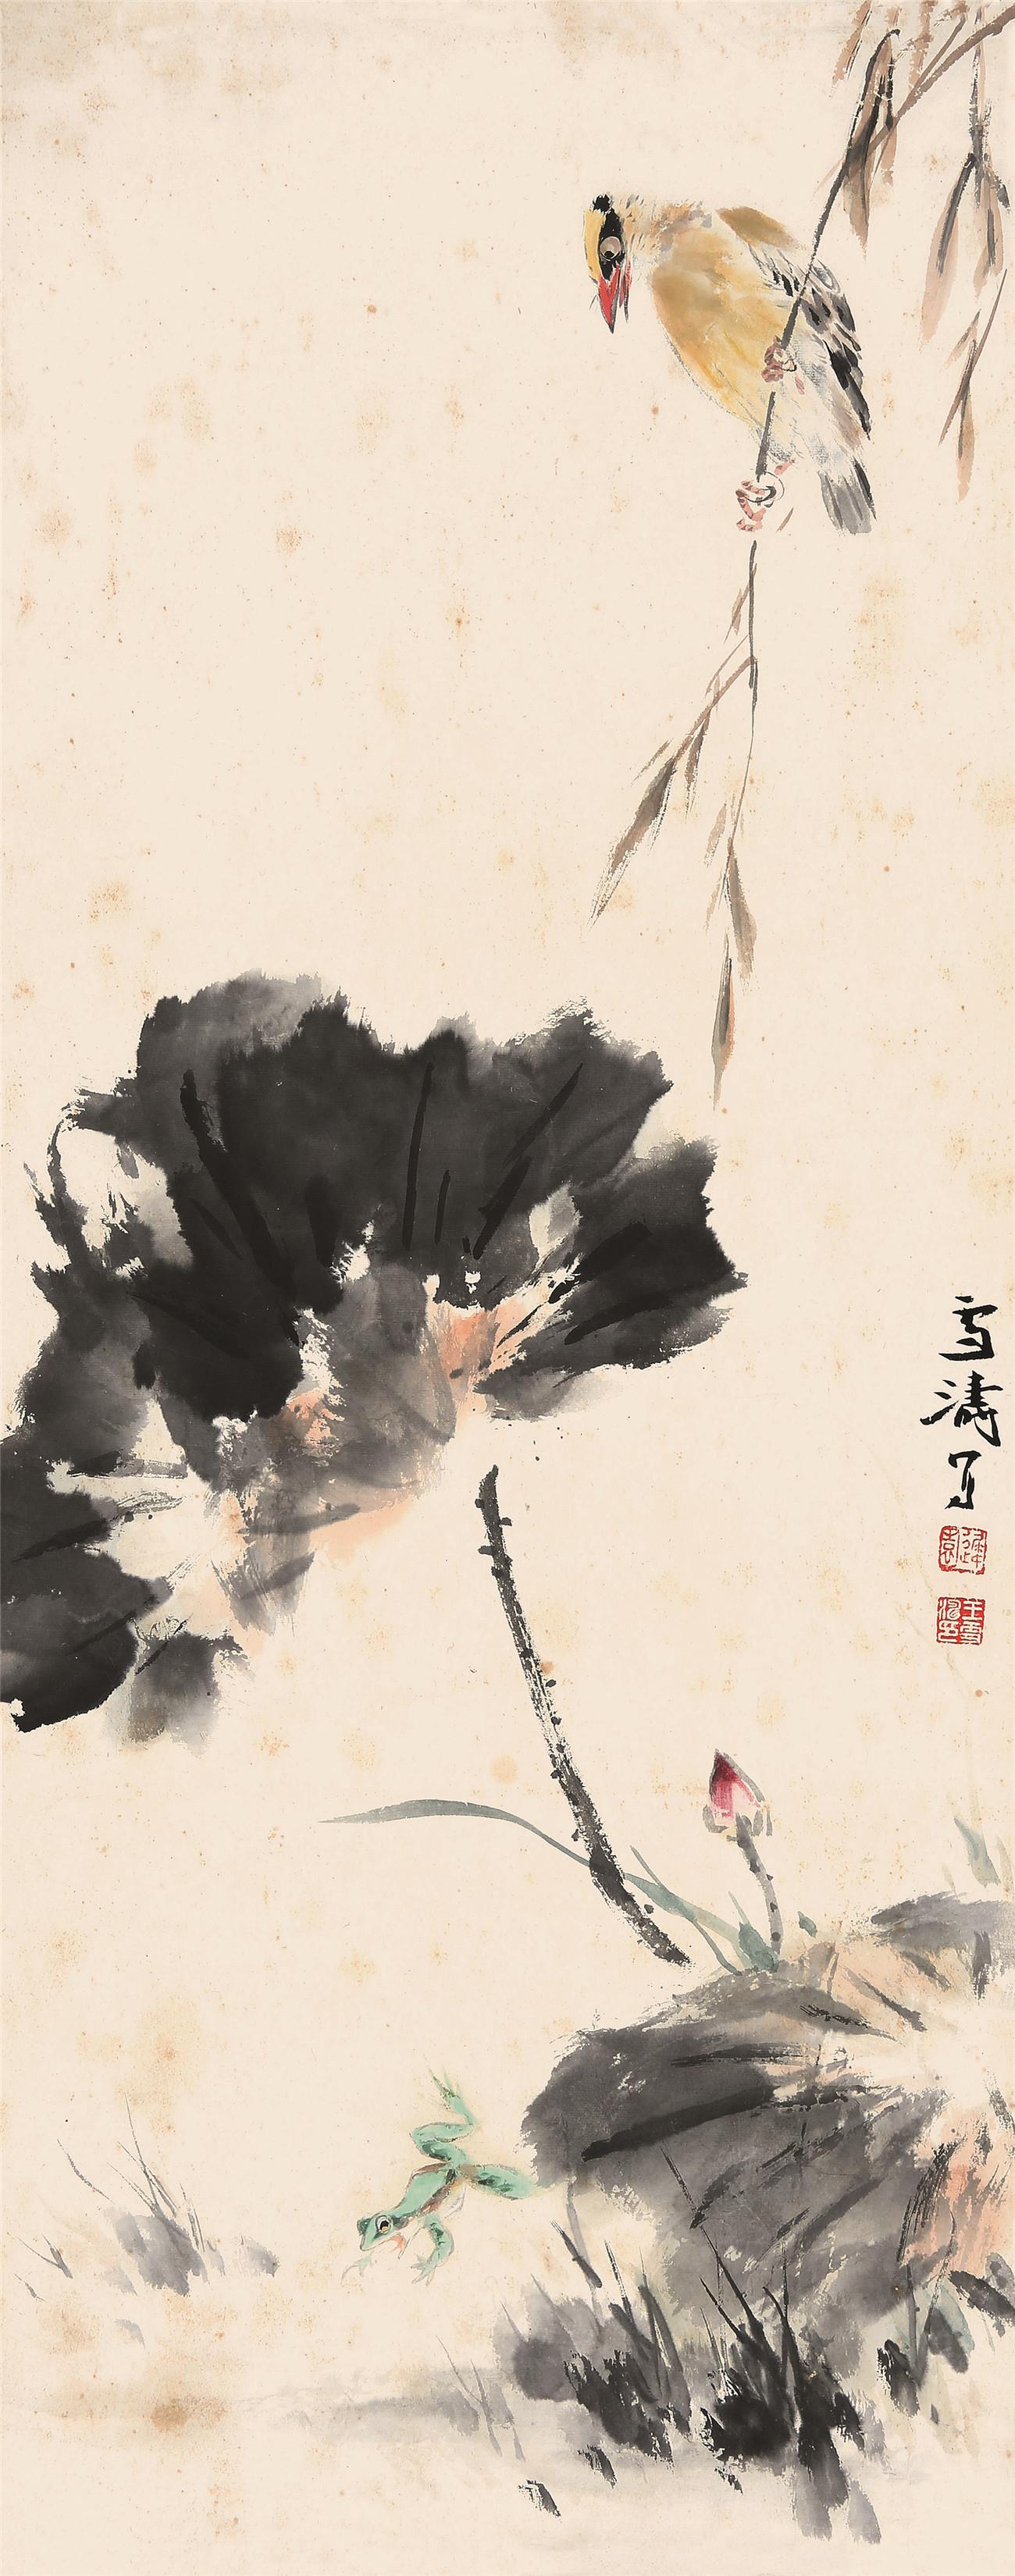 王雪涛(1903-1982)黄鹂蛙趣